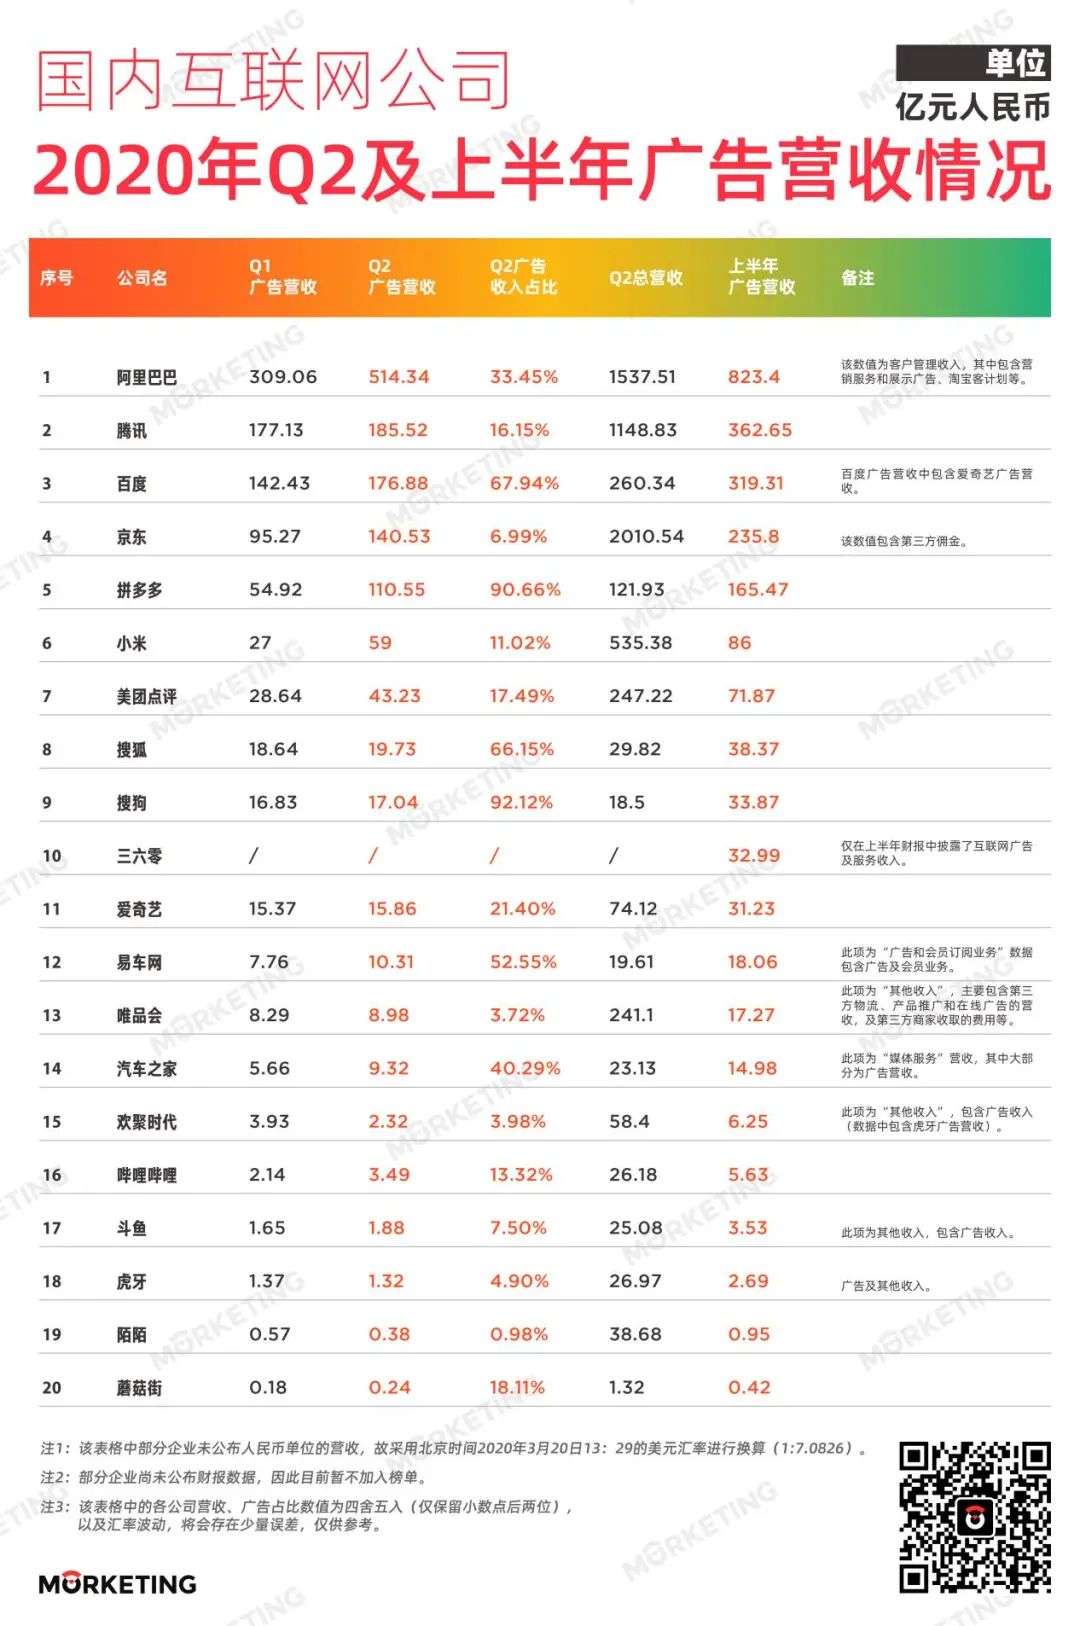 2020年Q2中国20大互联网公司广告收入情况梳理